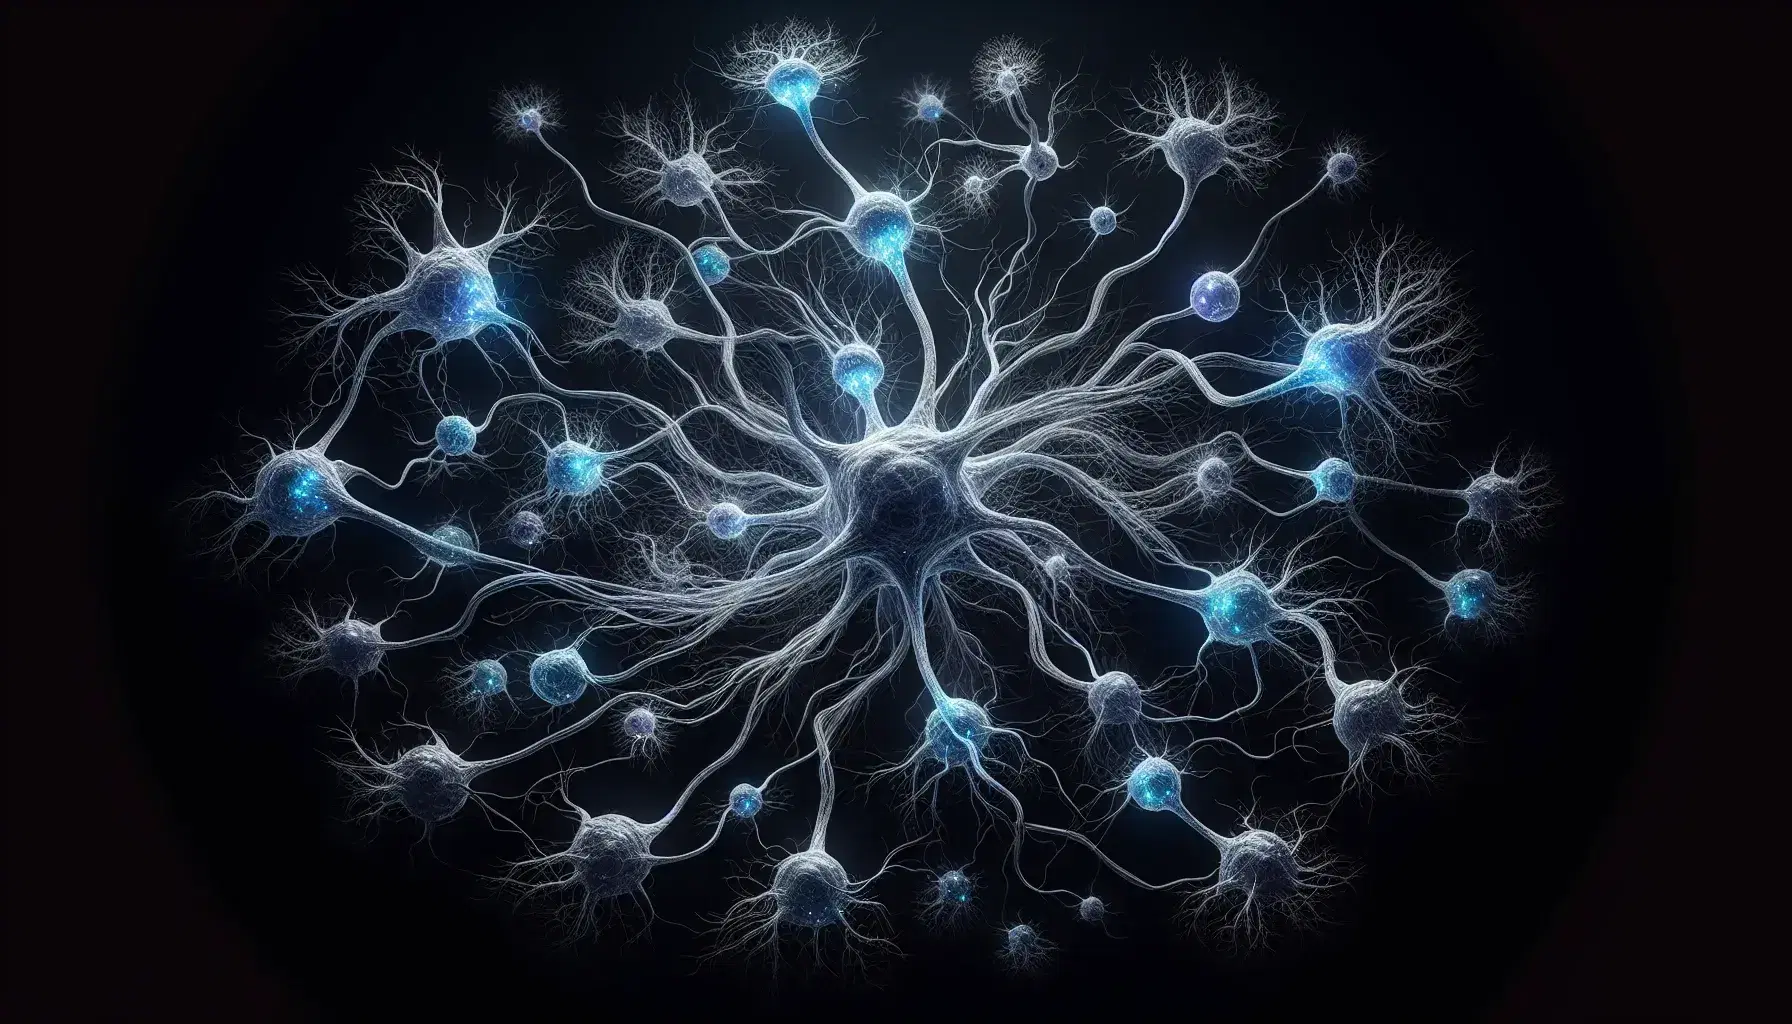 Red de neuronas interconectadas con dendritas azul translúcido sobre fondo negro, destacando la complejidad del sistema nervioso.